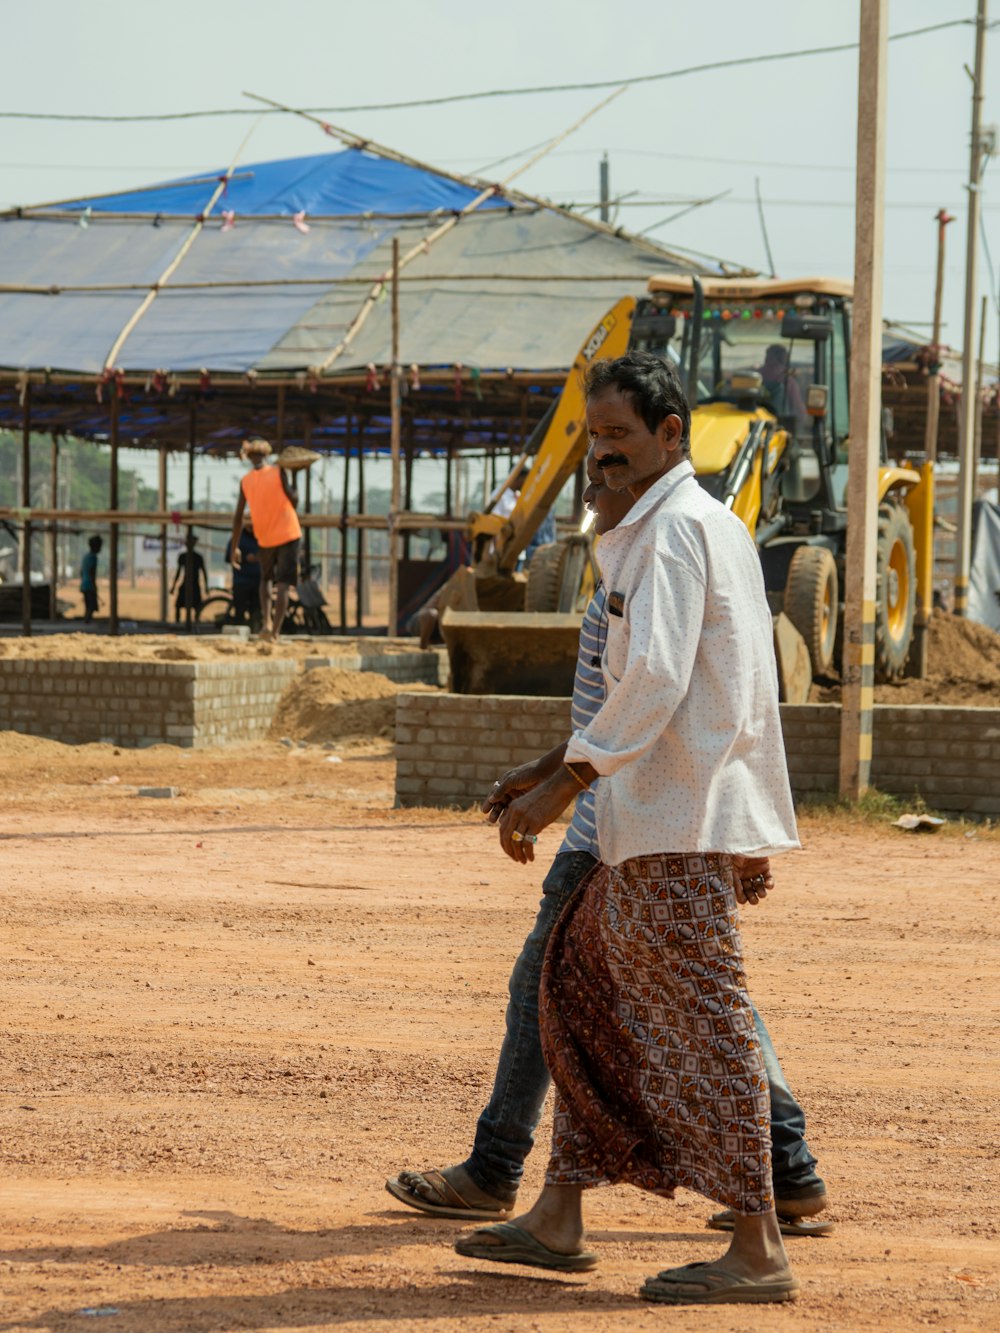 a man walking across a dirt field next to a construction site